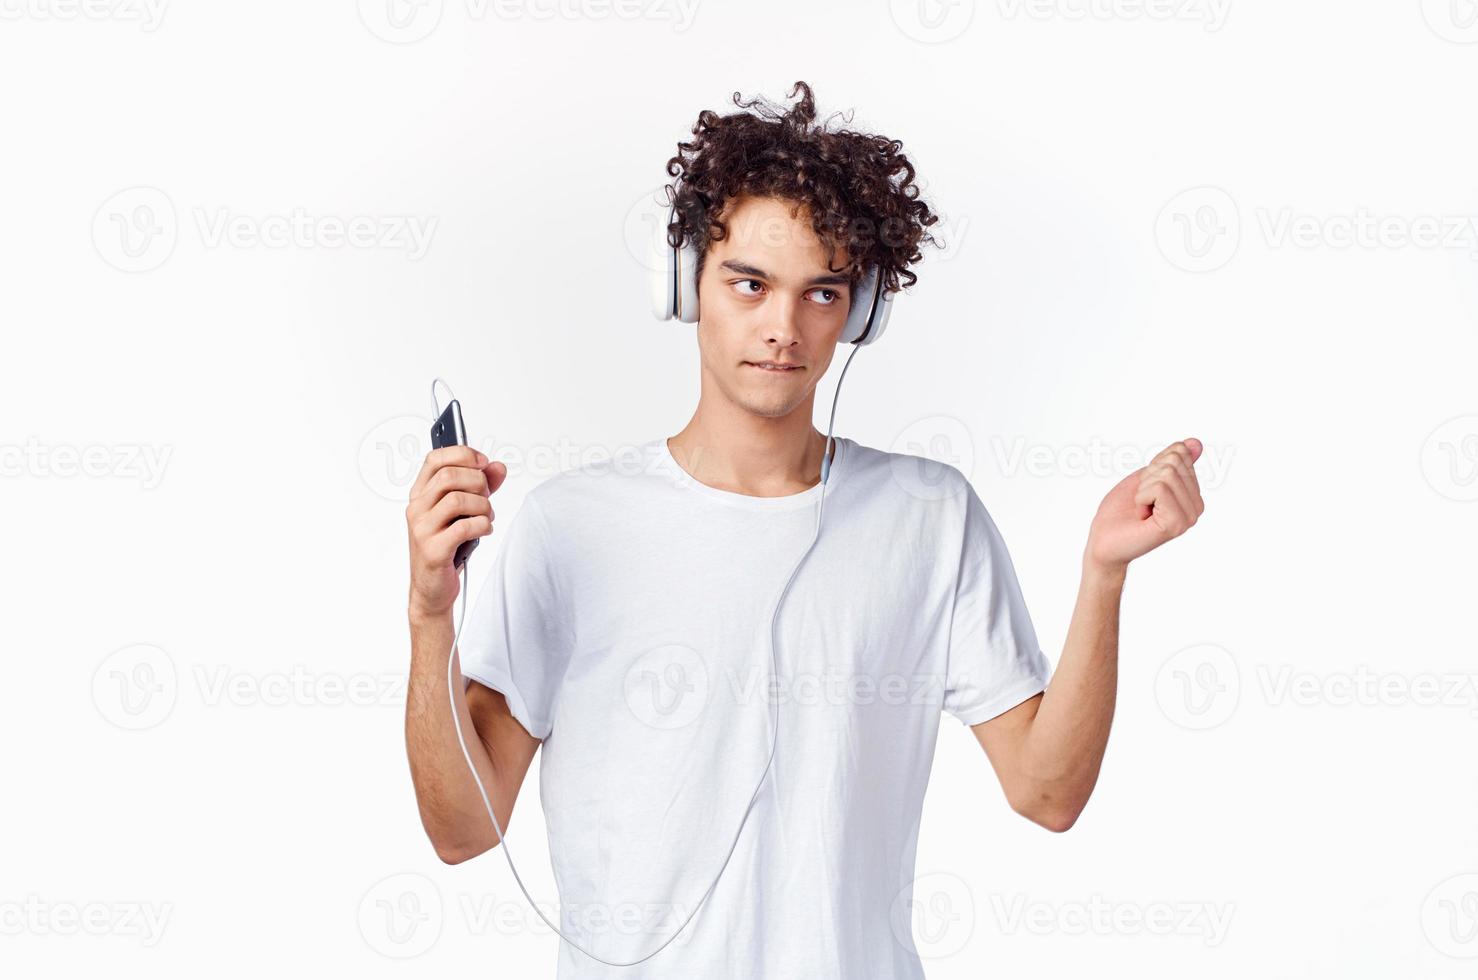 marrant gars avec frisé cheveux dans une blanc T-shirt écoute à la musique La technologie divertissement photo